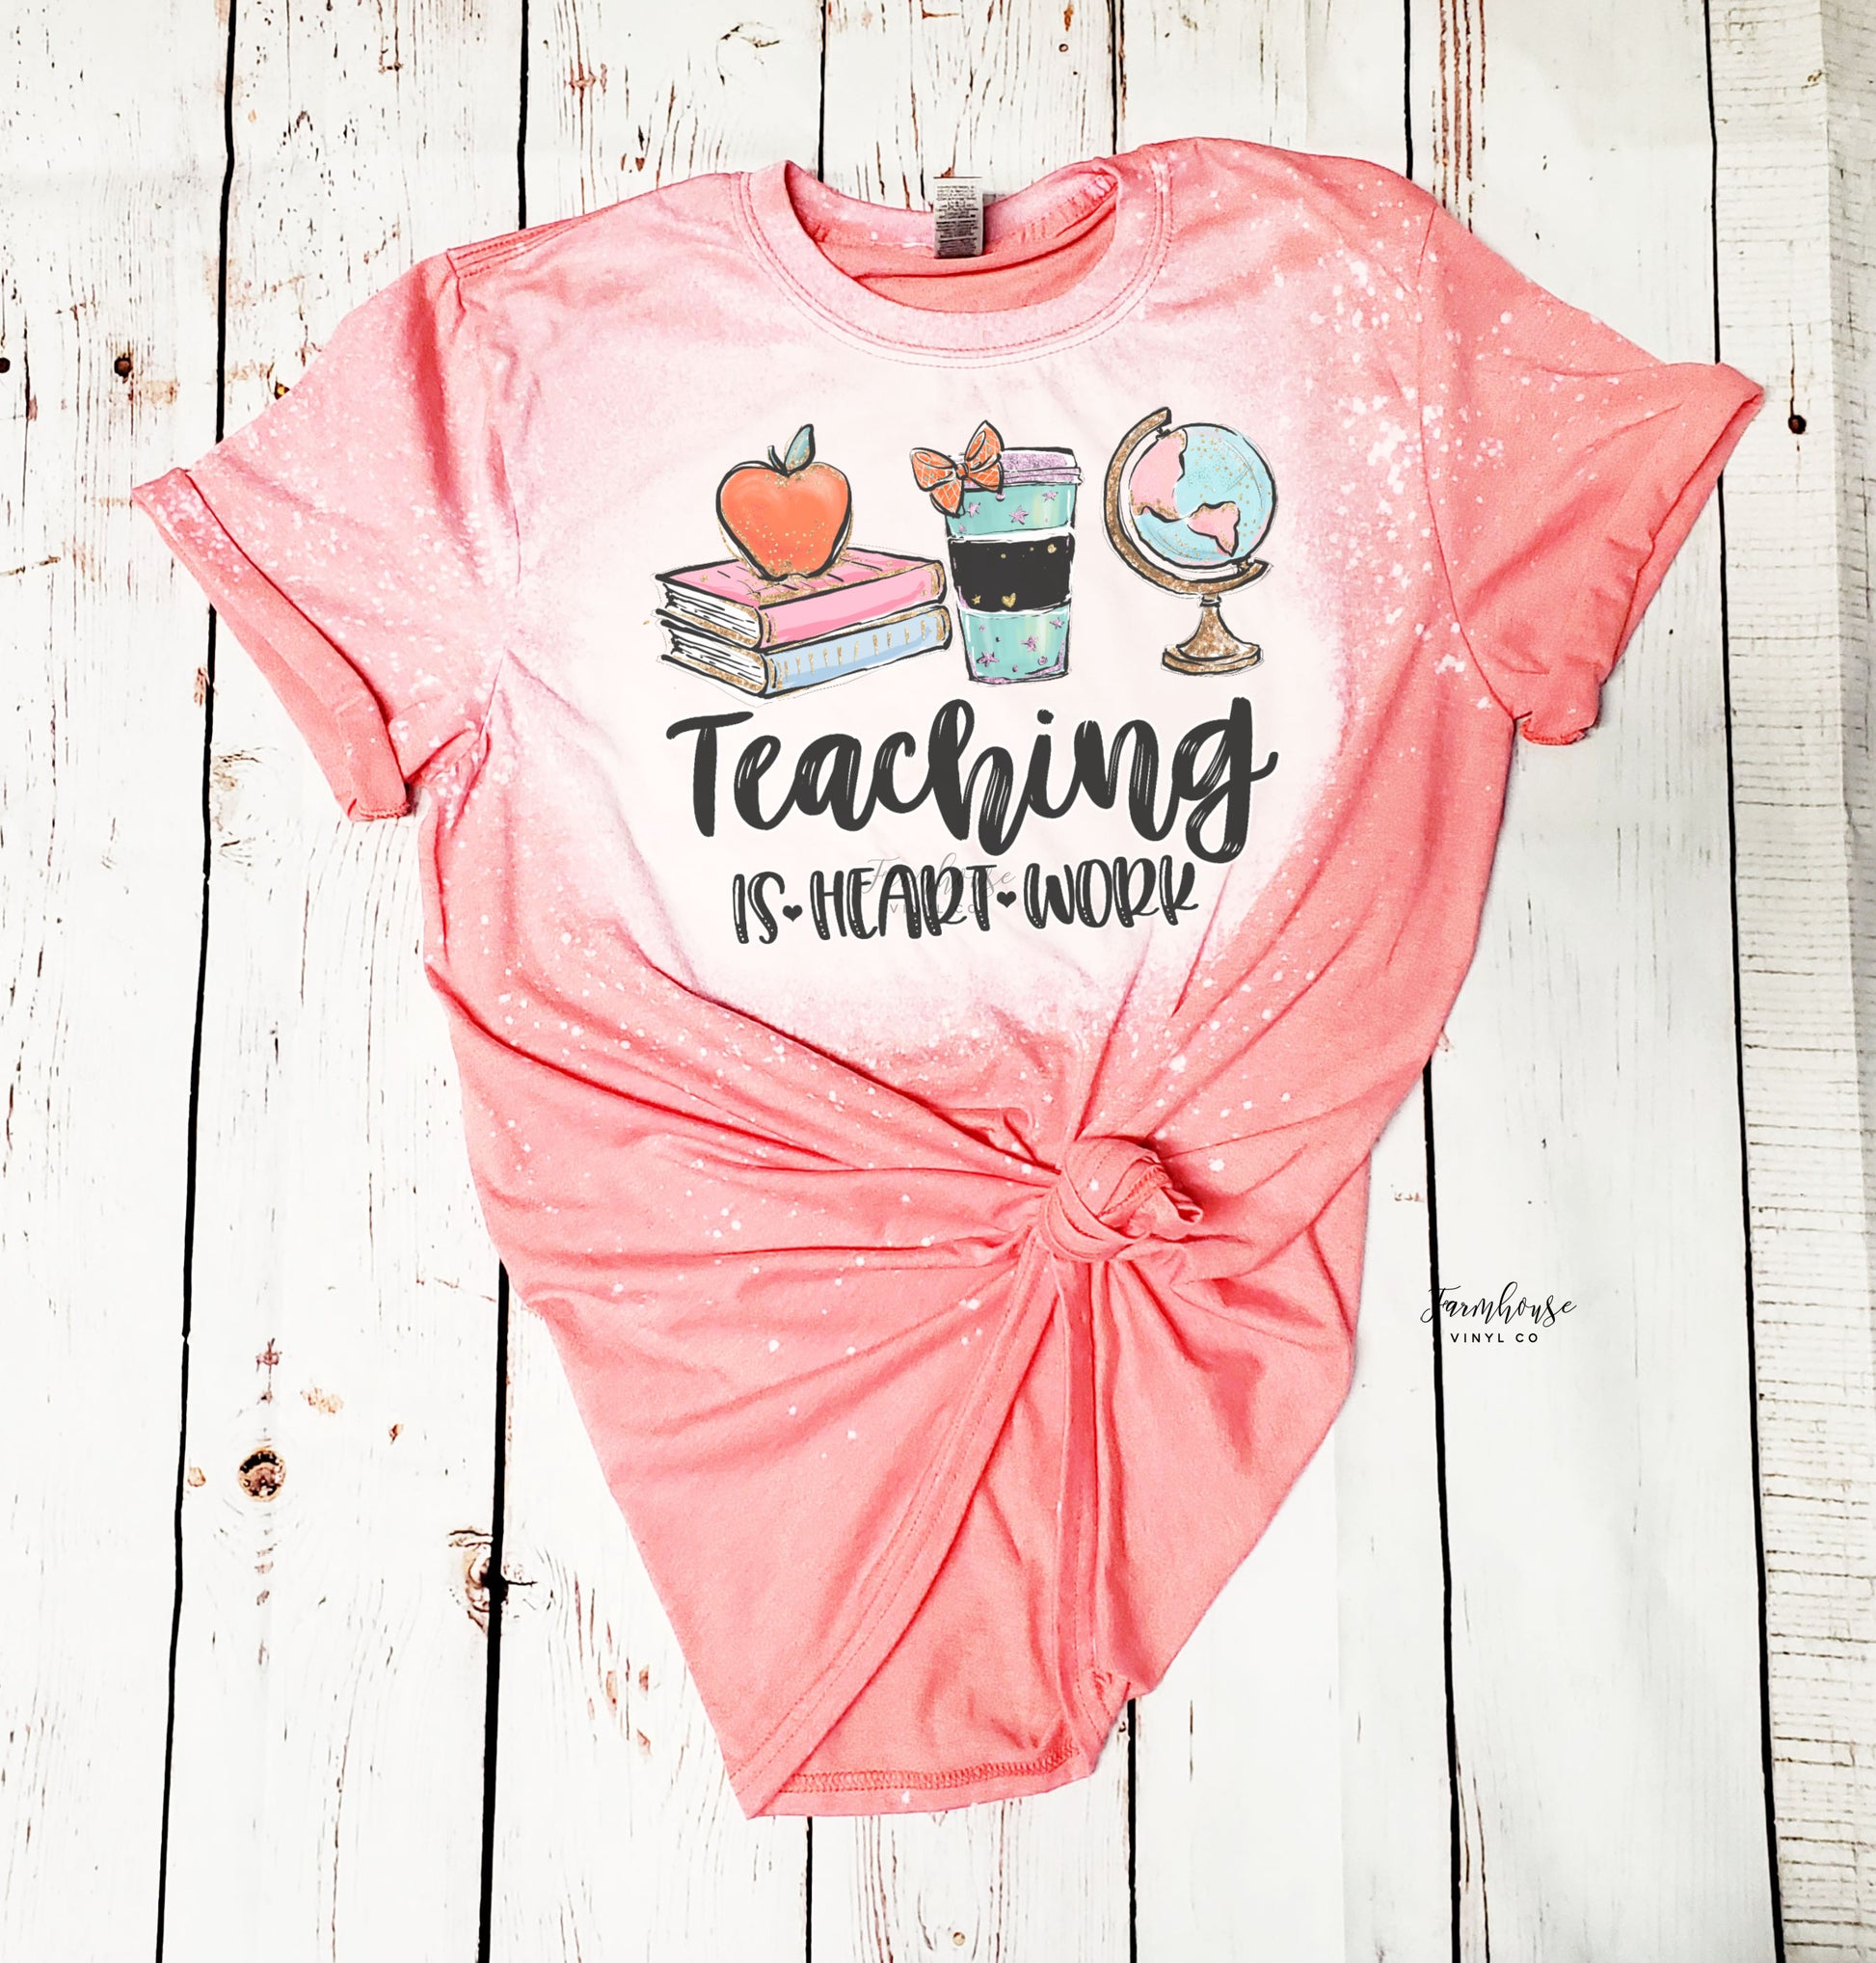 Teaching is Heart Work Bleached Shirt - Farmhouse Vinyl Co